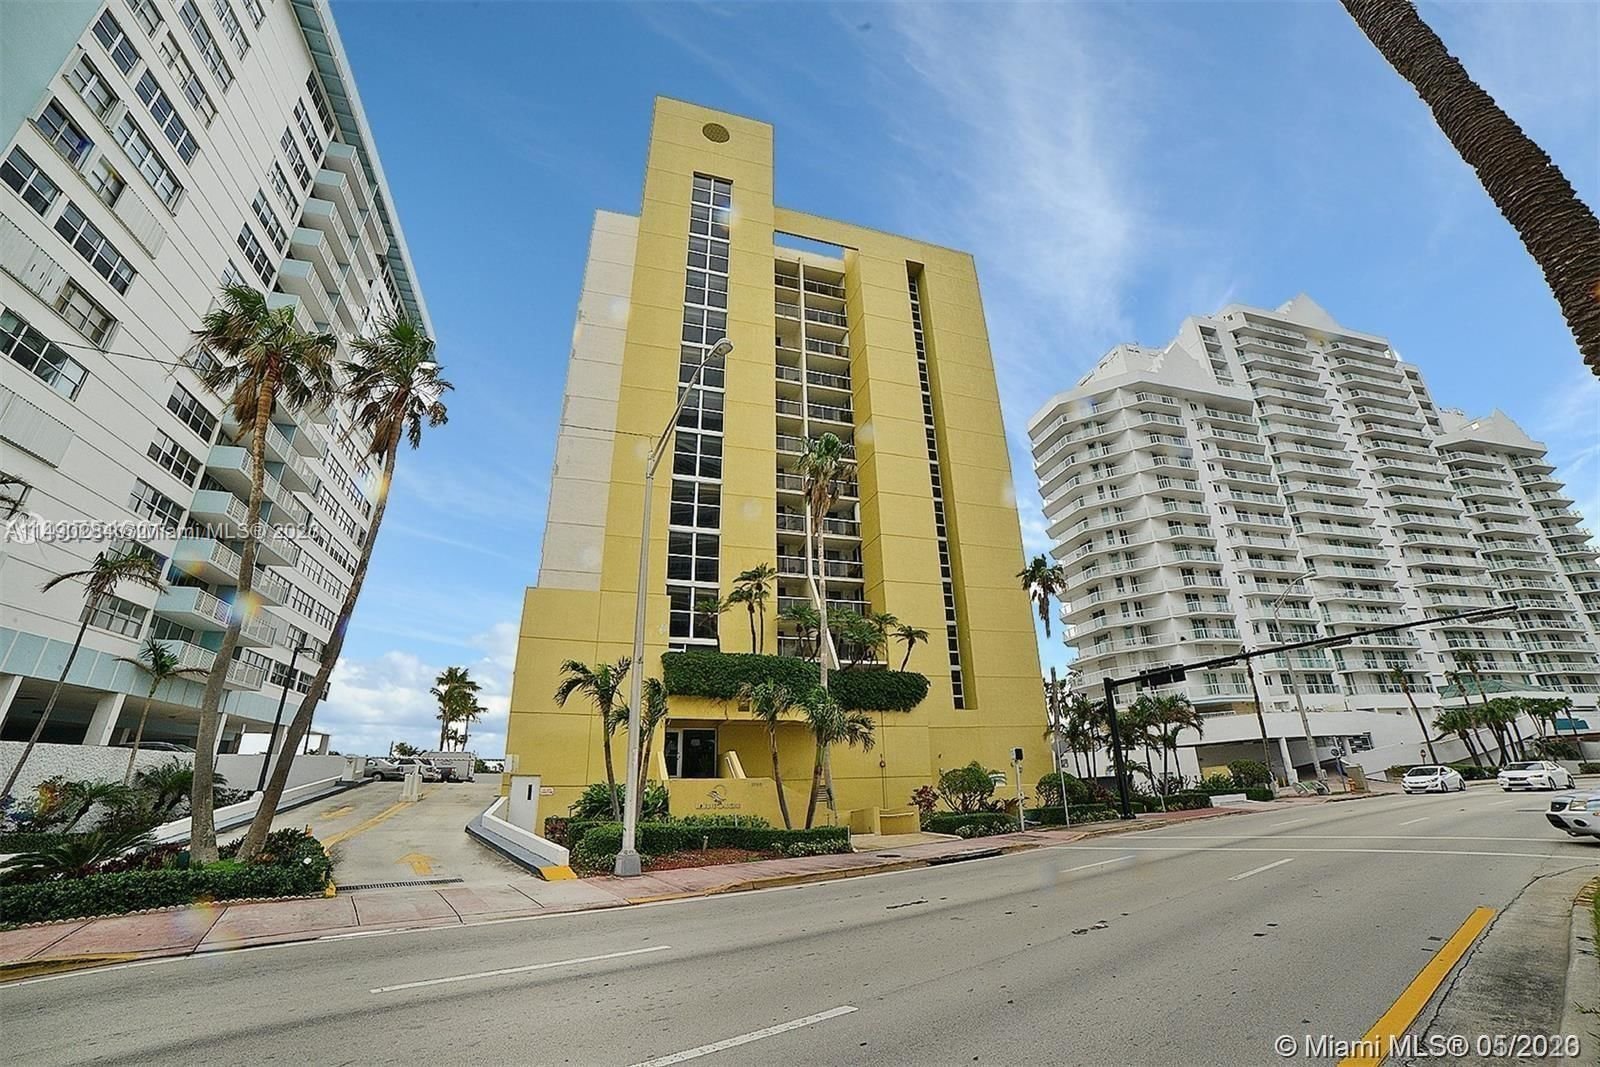 Real estate property located at 5880 Collins Ave PH-4, Miami-Dade County, LA RIVE GAUCHE CONDO, Miami Beach, FL